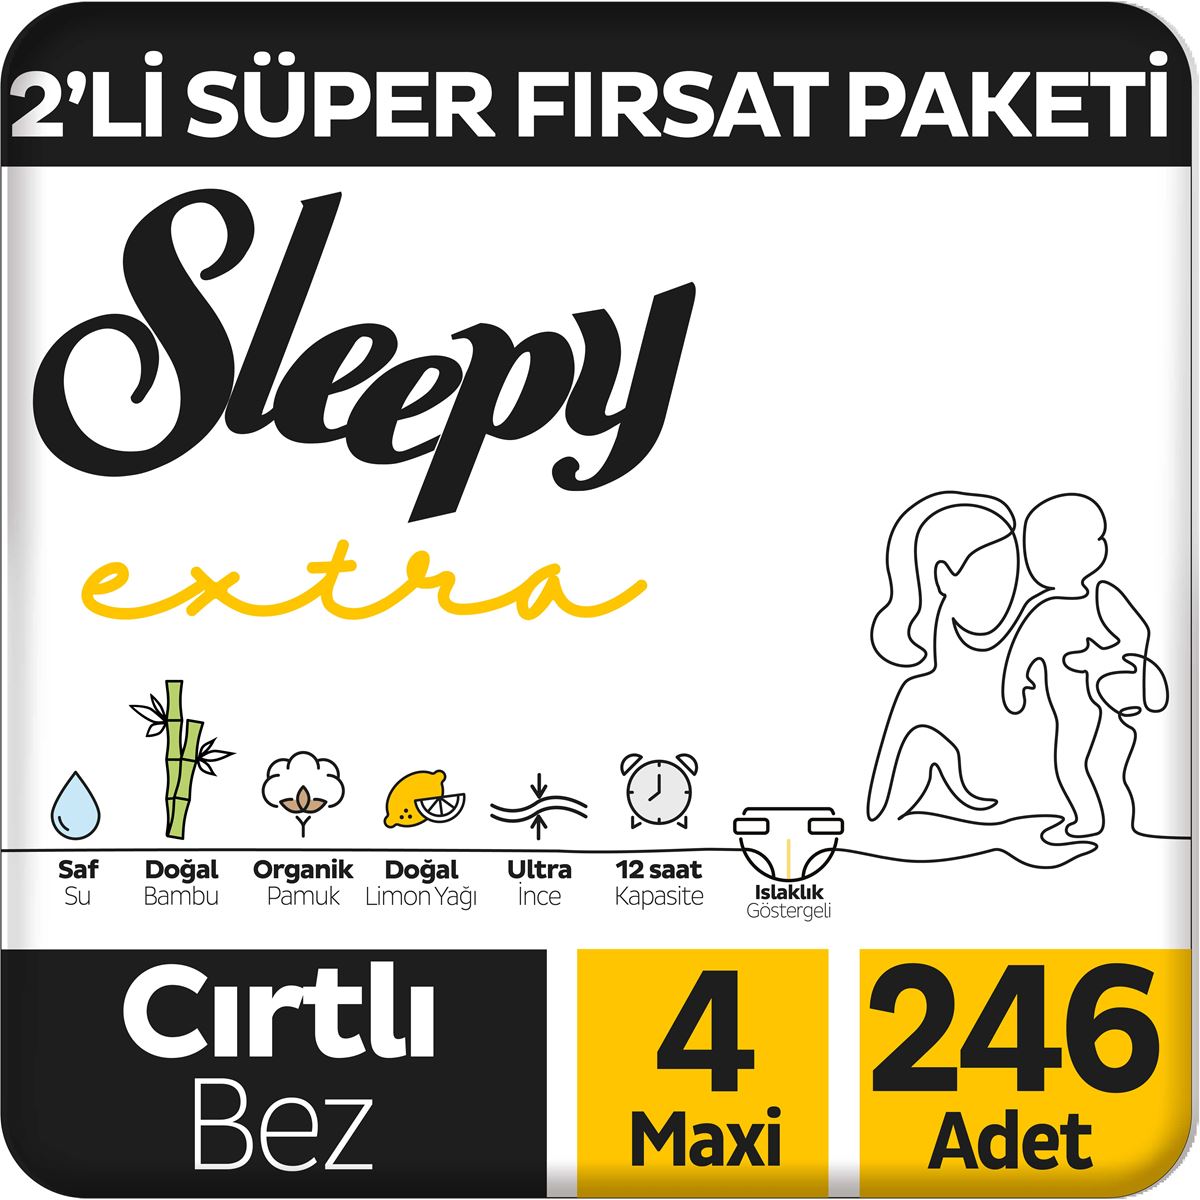 Sleepy Extra Günlük Aktivite 2'li Süper Fırsat Paketi Bebek Bezi 4 Numara Maxi 246 Adet